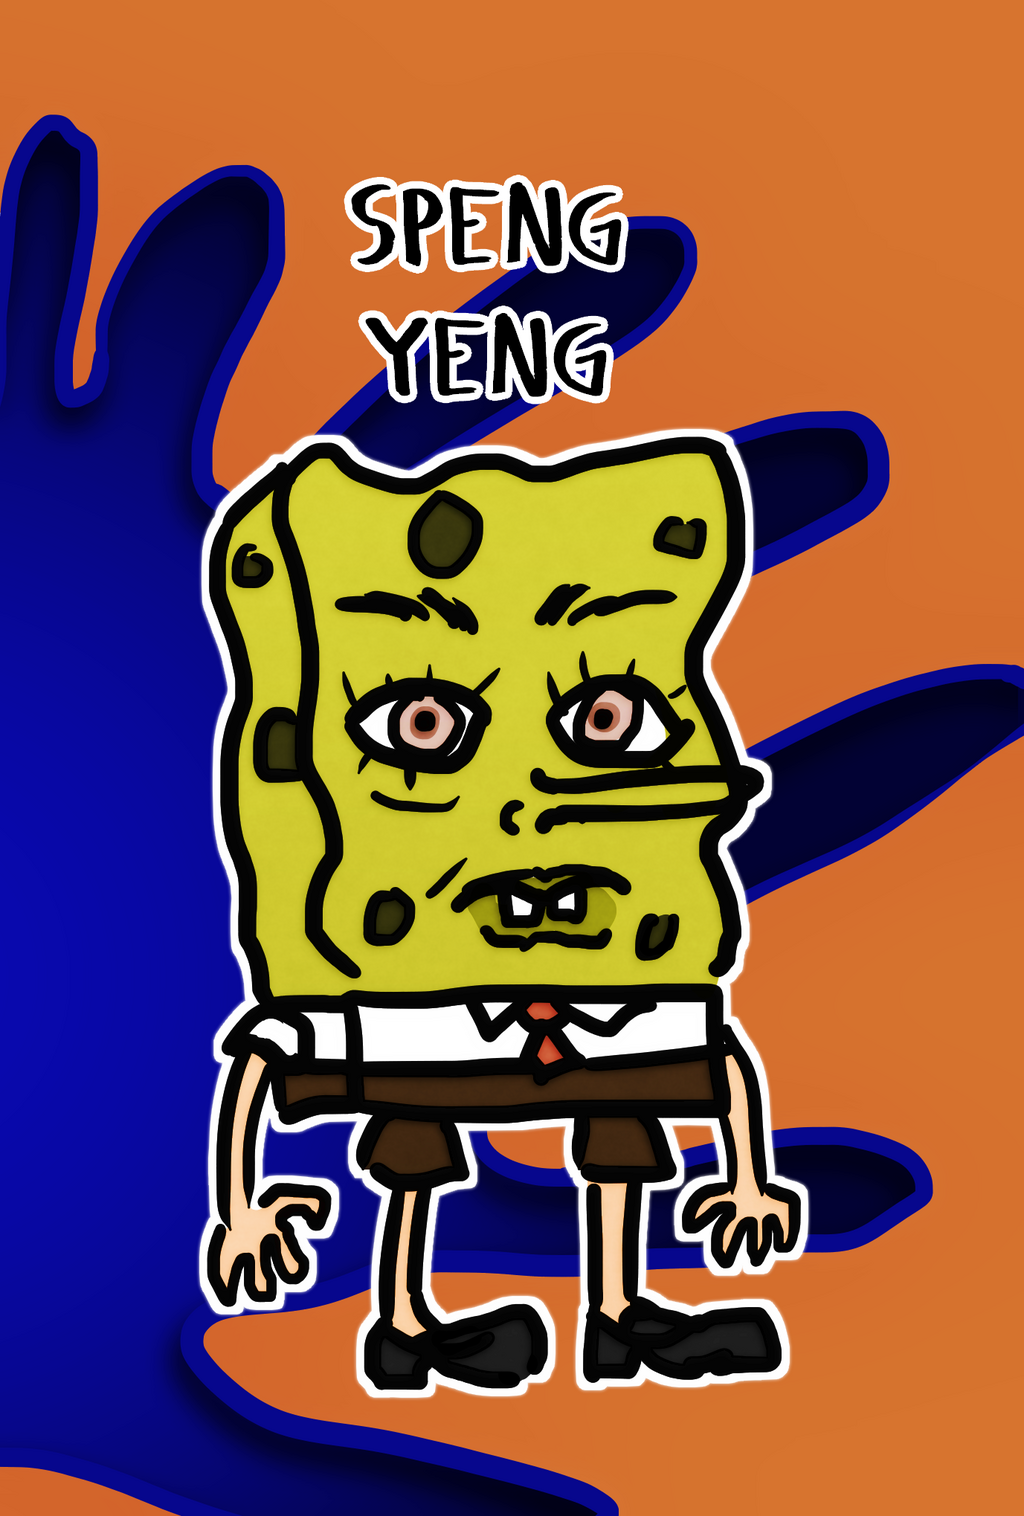 The Sponge